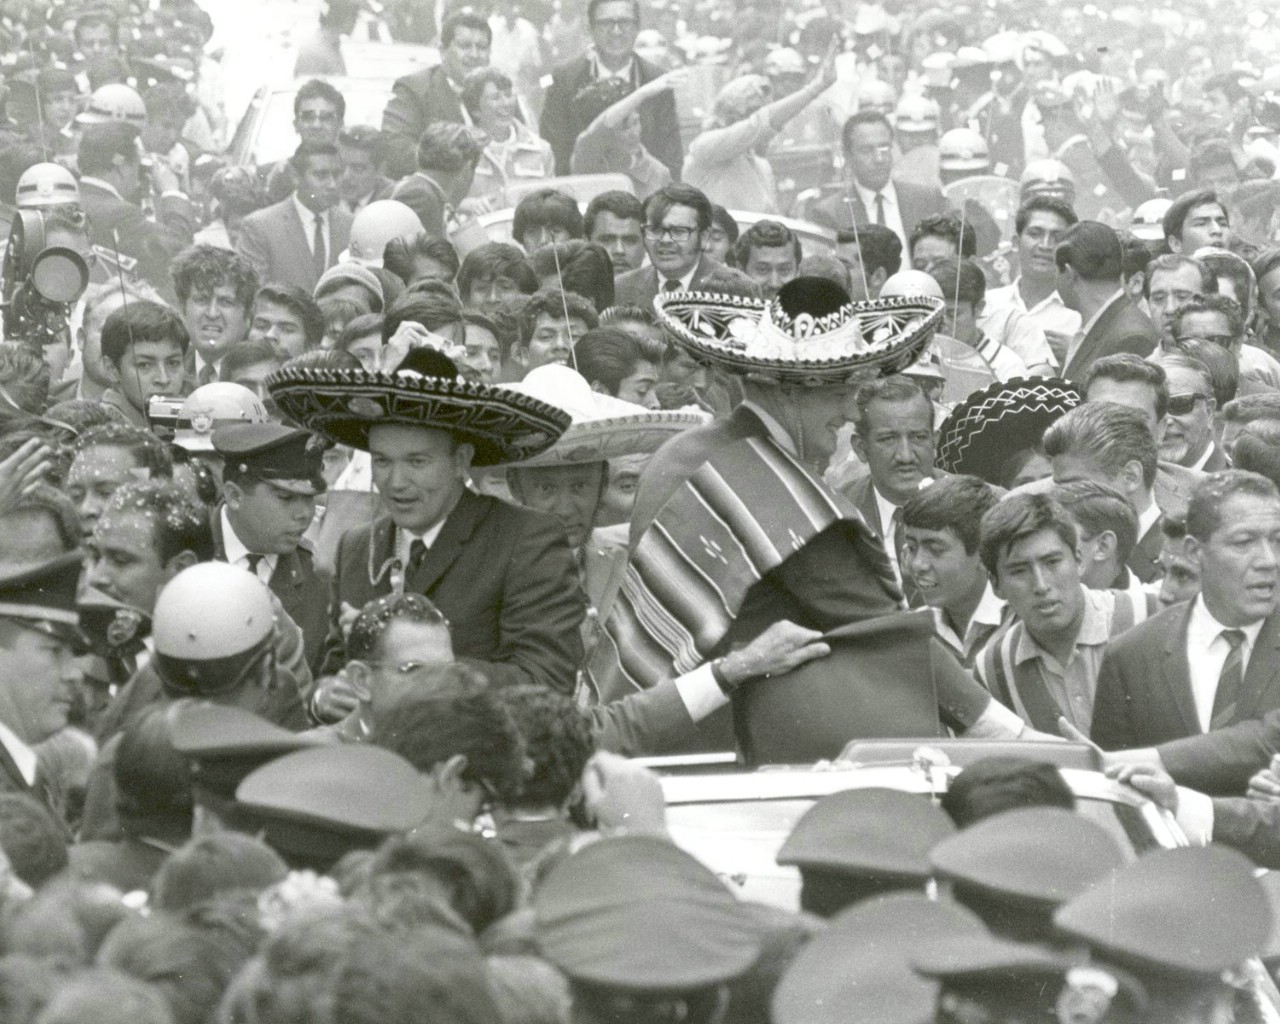 壁纸1280x1024One Giant Leap for Mankind  Apollo 11 Astronauts Swarmed by Thousands In Mexico City Parade 墨西哥城的庆祝游行壁纸 阿波罗11号登月40周年纪念壁纸壁纸 阿波罗11号登月40周年纪念壁纸图片 阿波罗11号登月40周年纪念壁纸素材 人文壁纸 人文图库 人文图片素材桌面壁纸